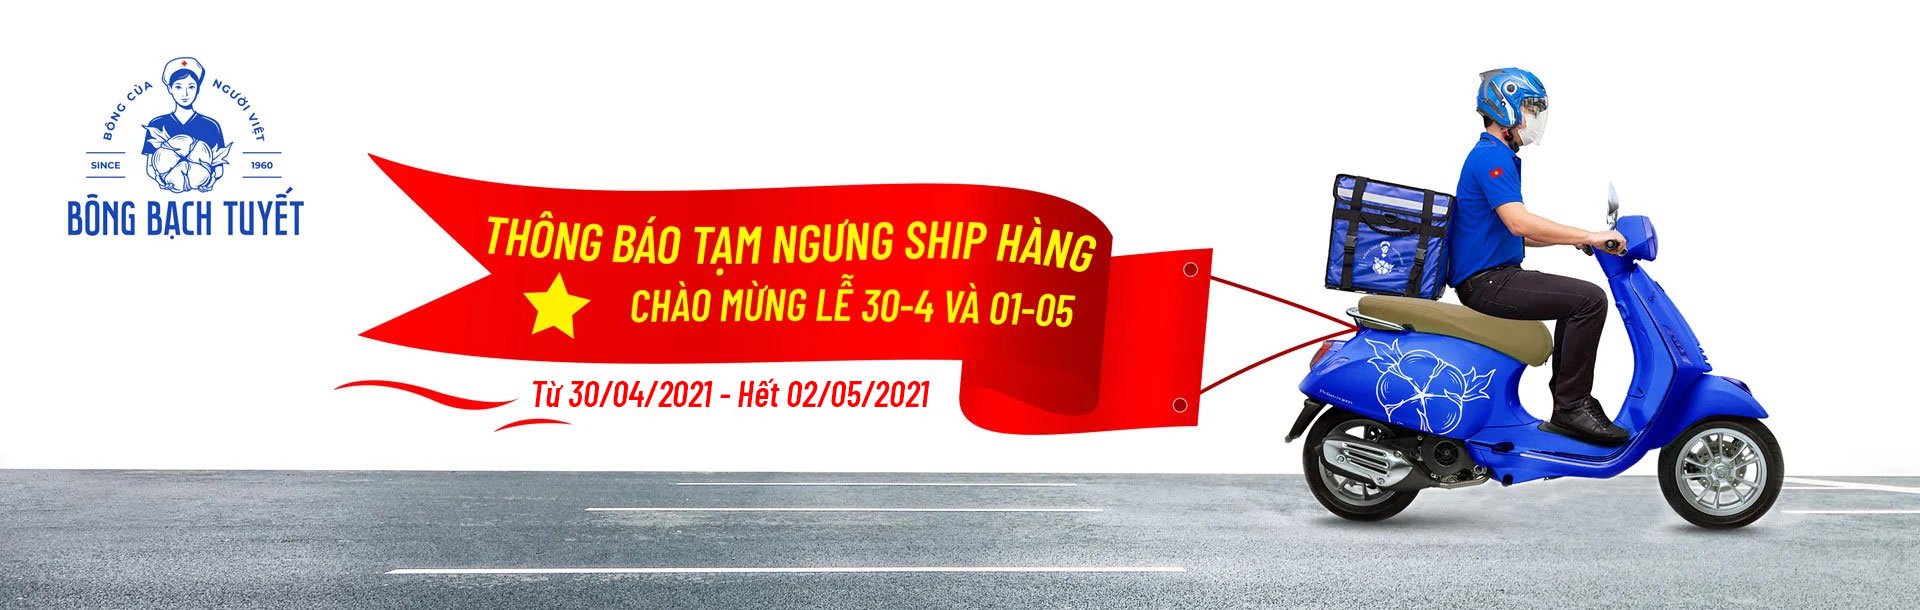 Bông Bạch Tuyết tạm ngưng ship hàng dịp lễ 30/04 & 01/05